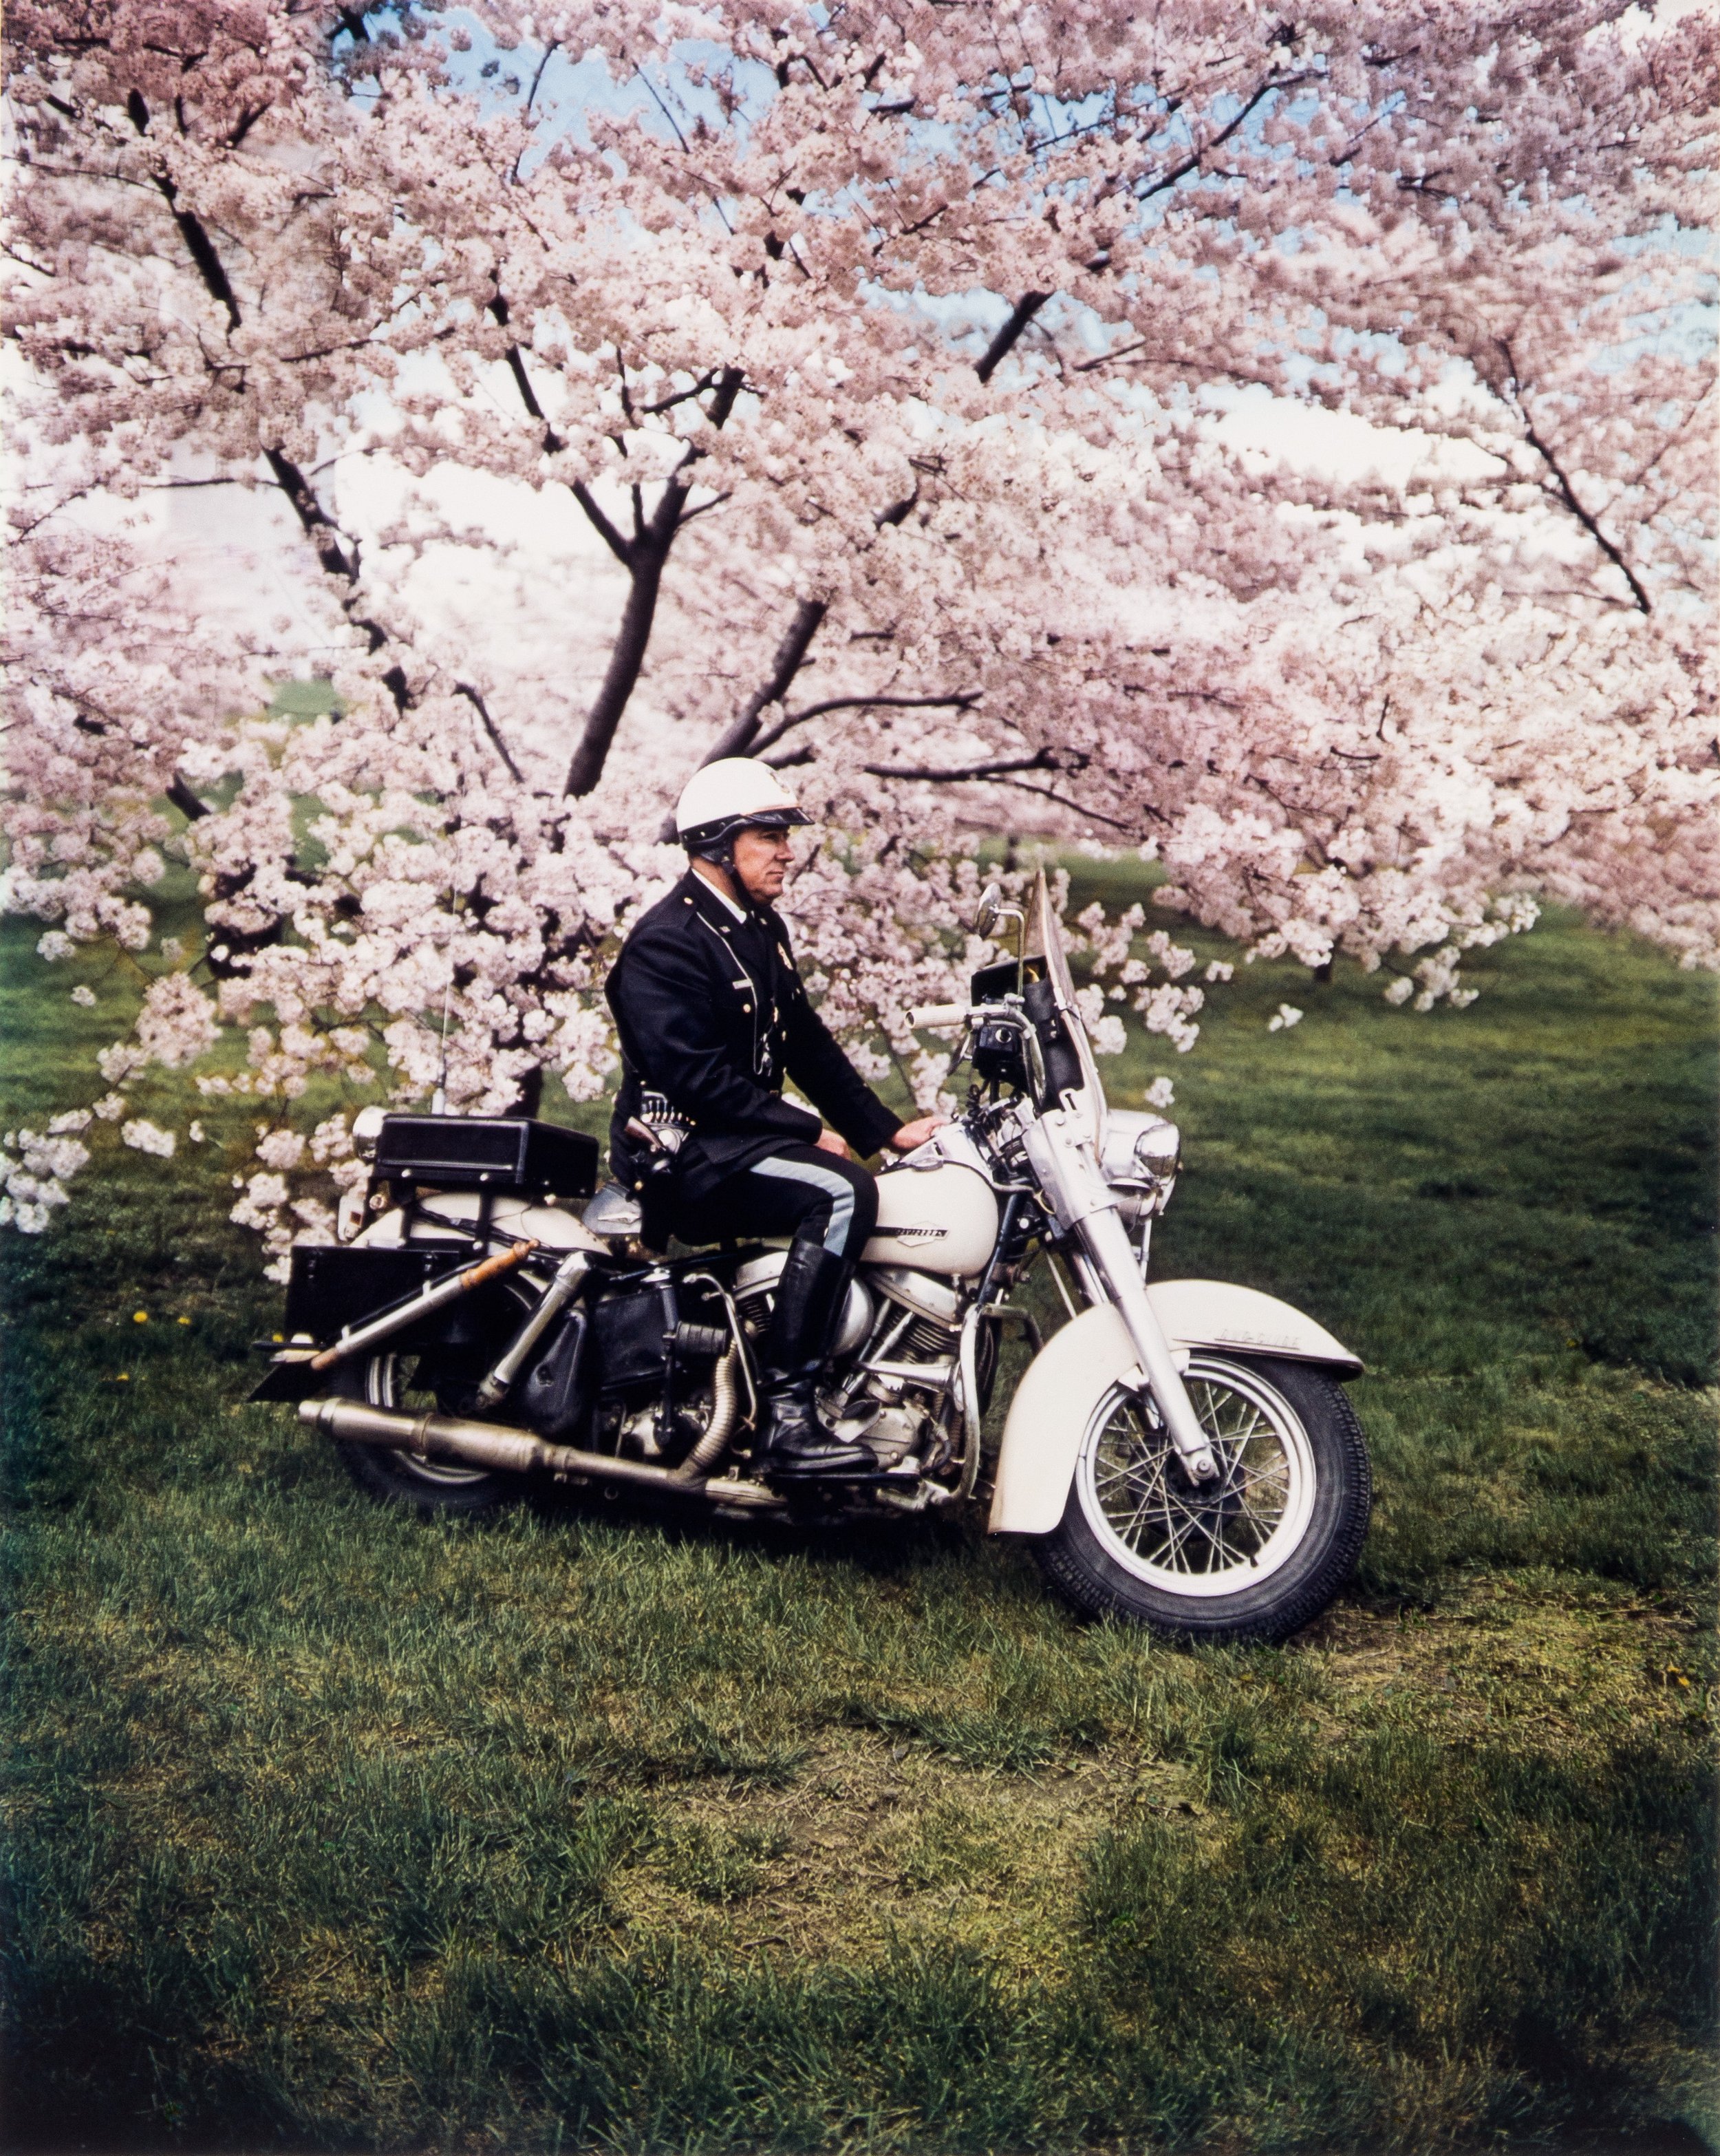  Springtime, Washington 1965 © Evelyn Hofer 